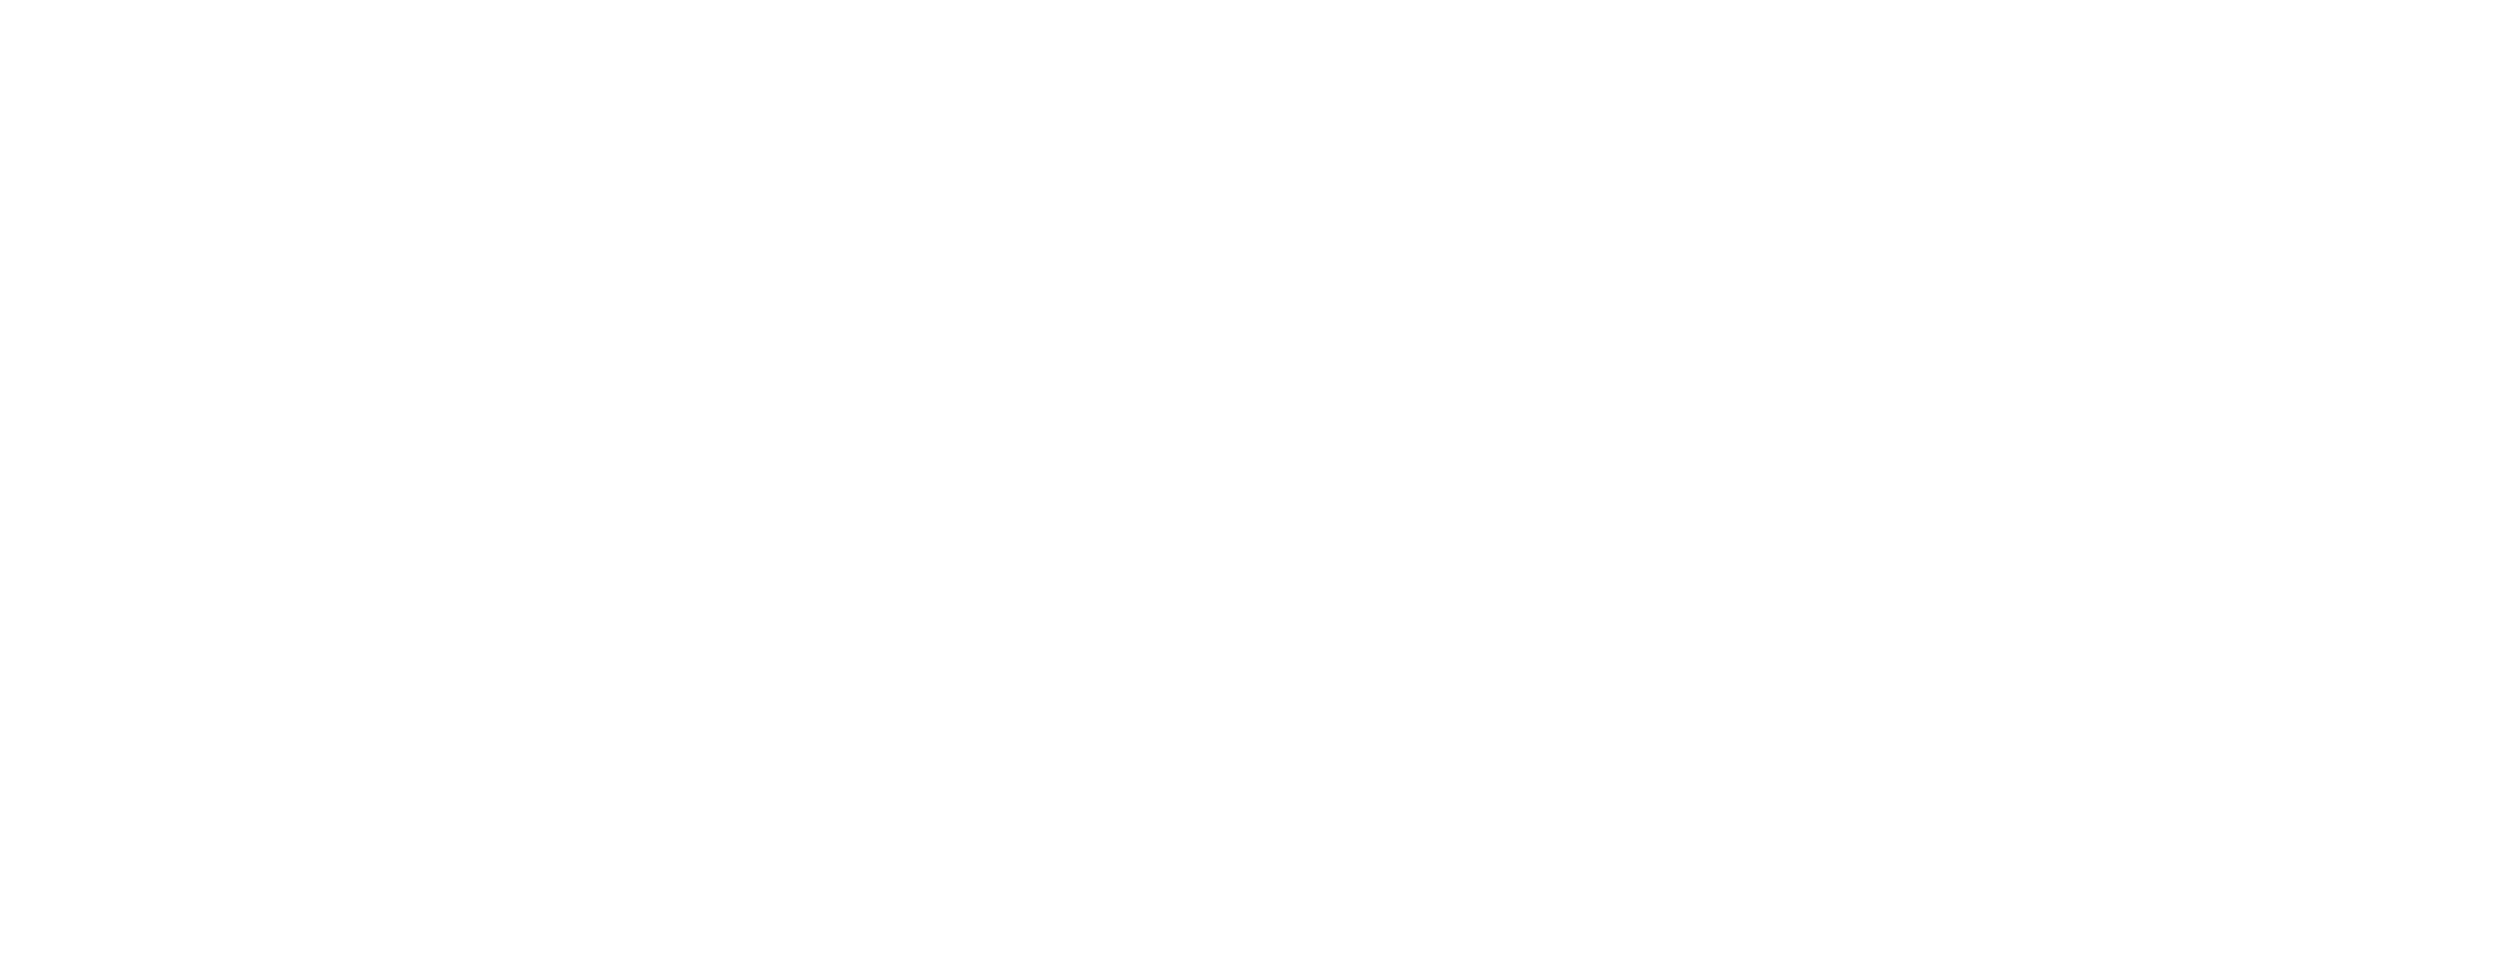 CULLIMORE RACING